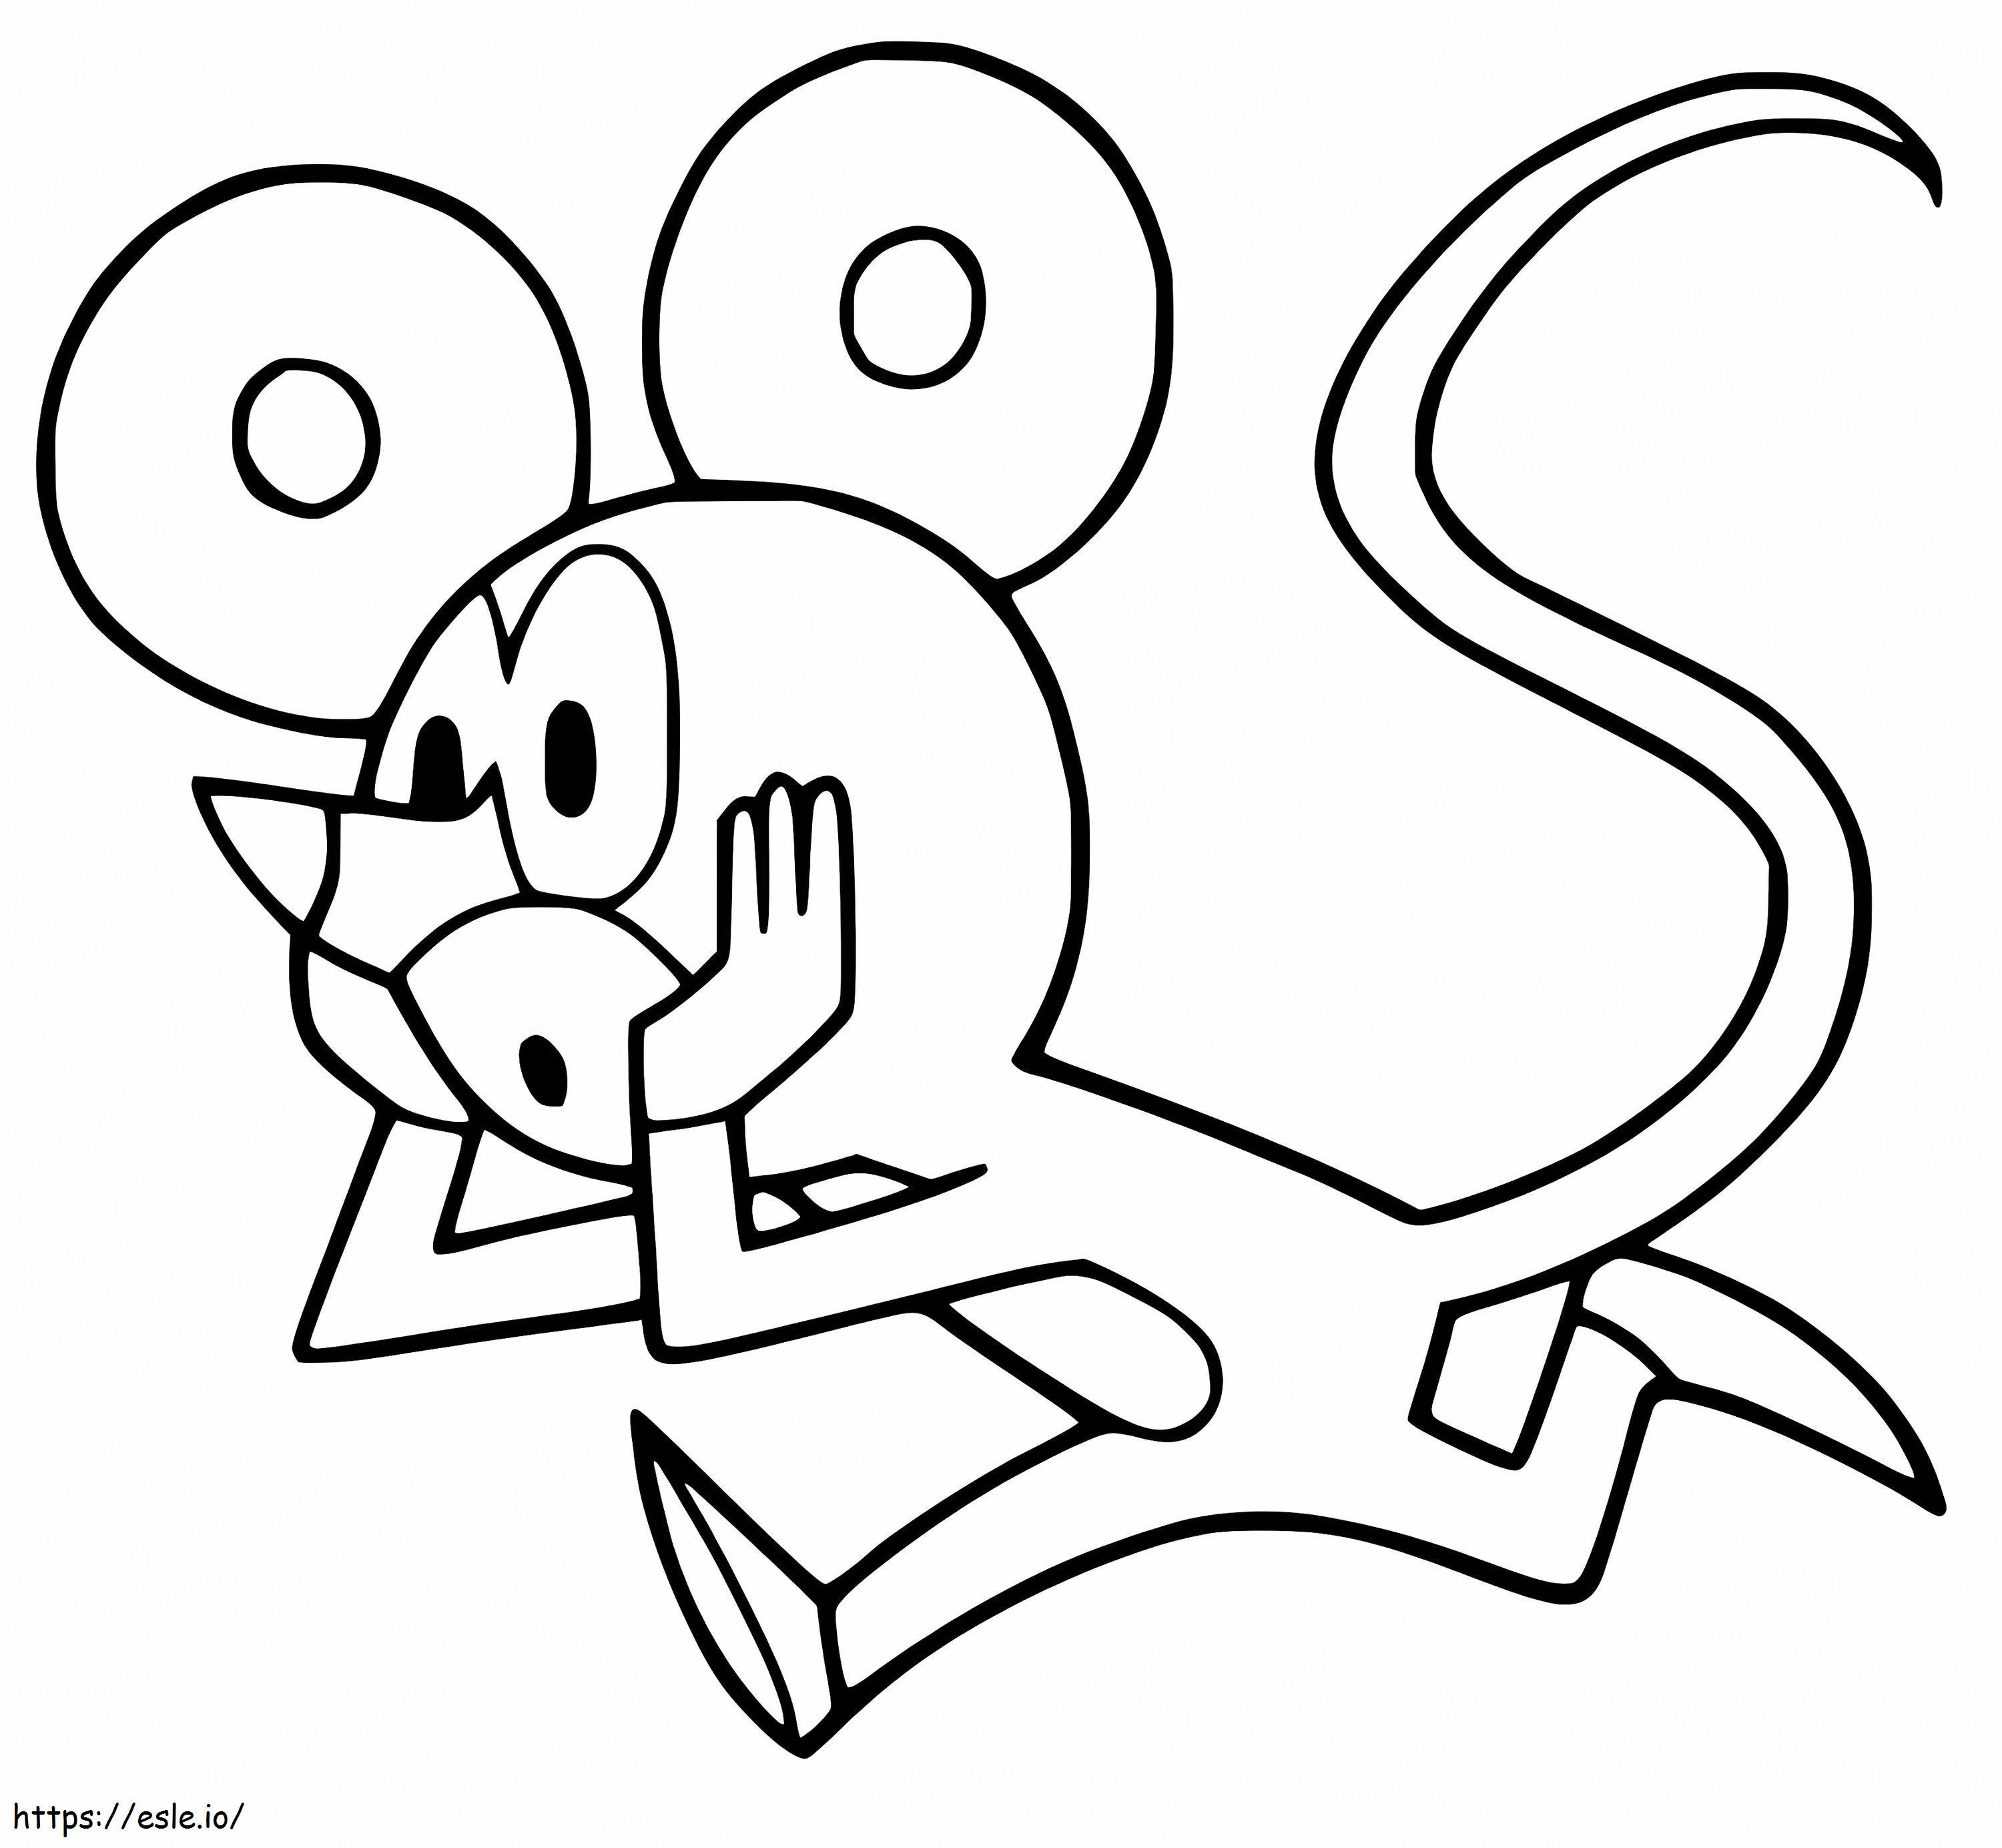 Rato da toupeira para colorir